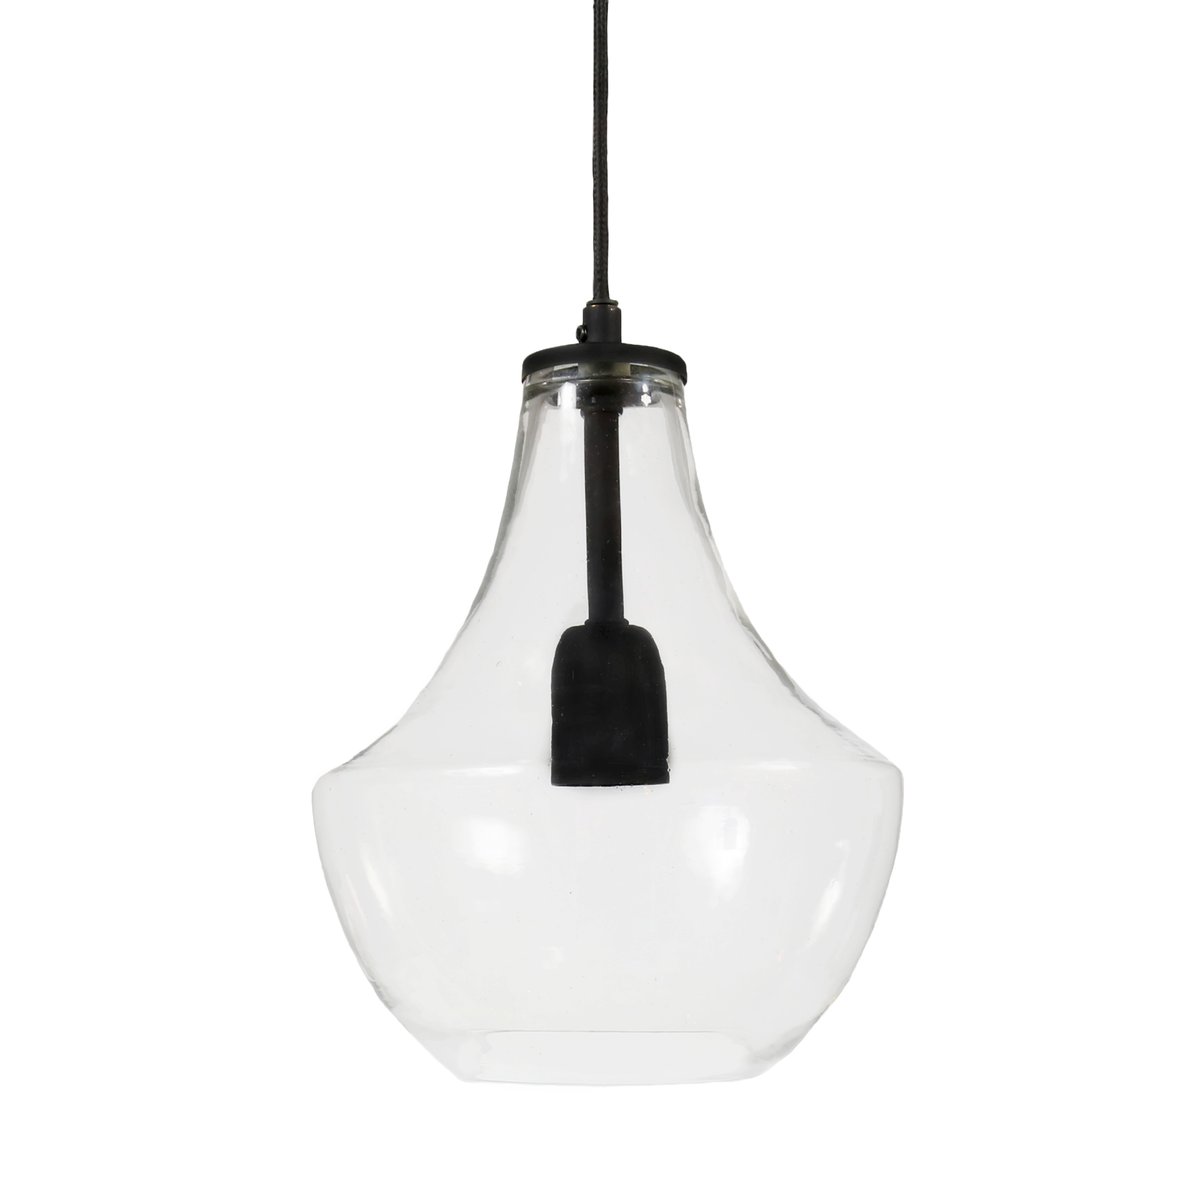 PR Home Hamilton plafondlamp, 21 cm transparant-zwart